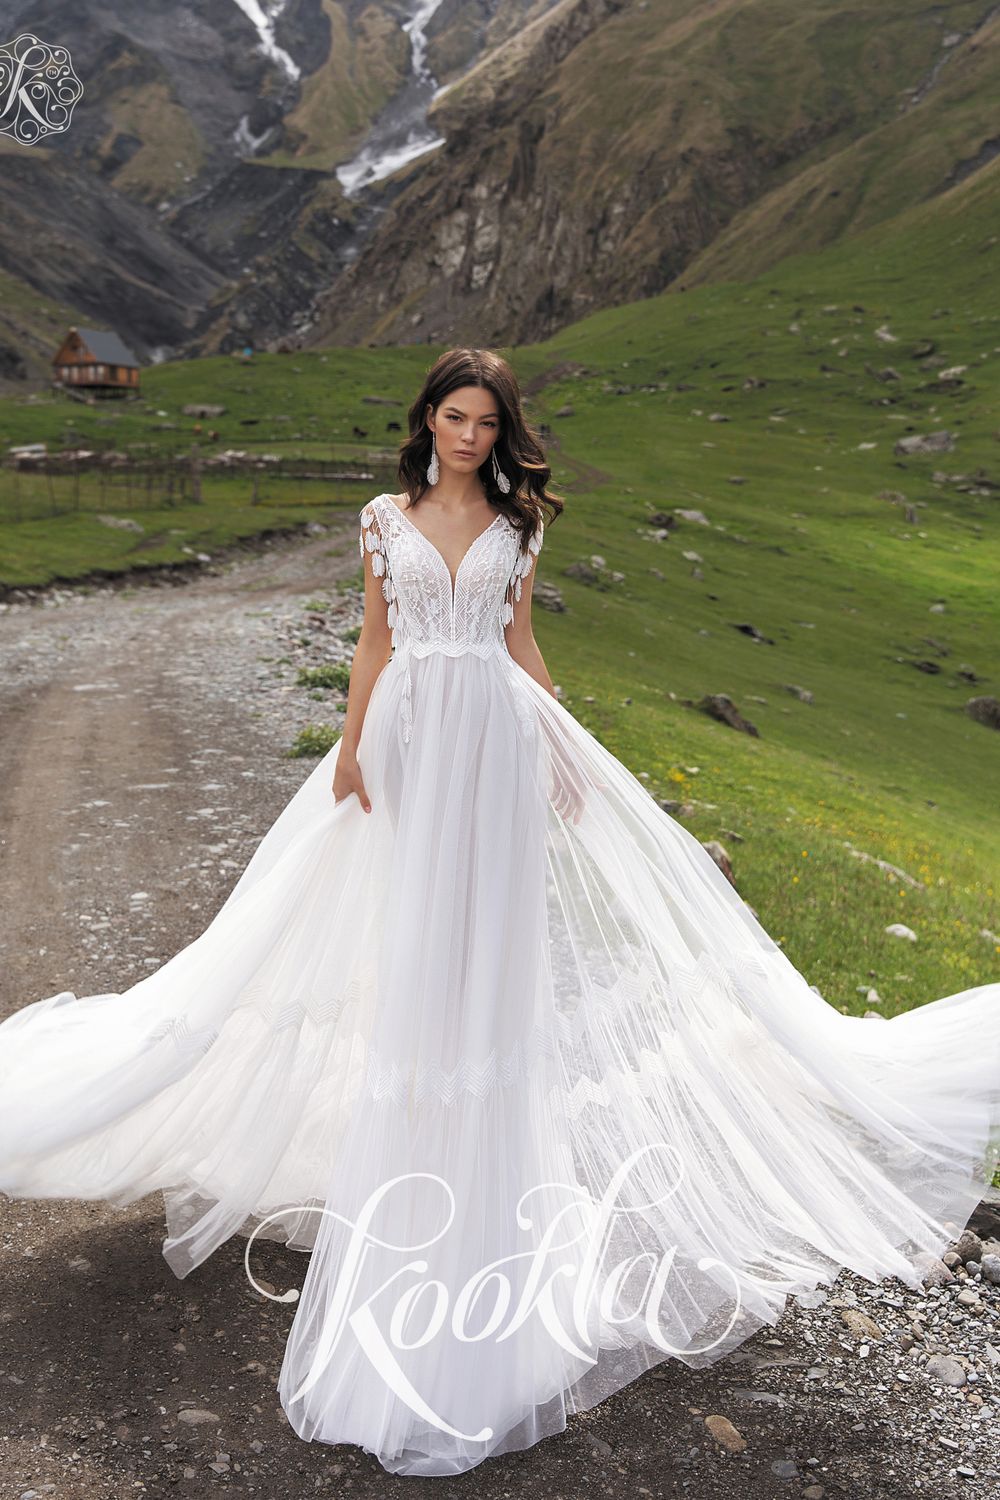 Свадебное платье от бренда Kookla 'Линайз' в стиле - Бохо, рустик